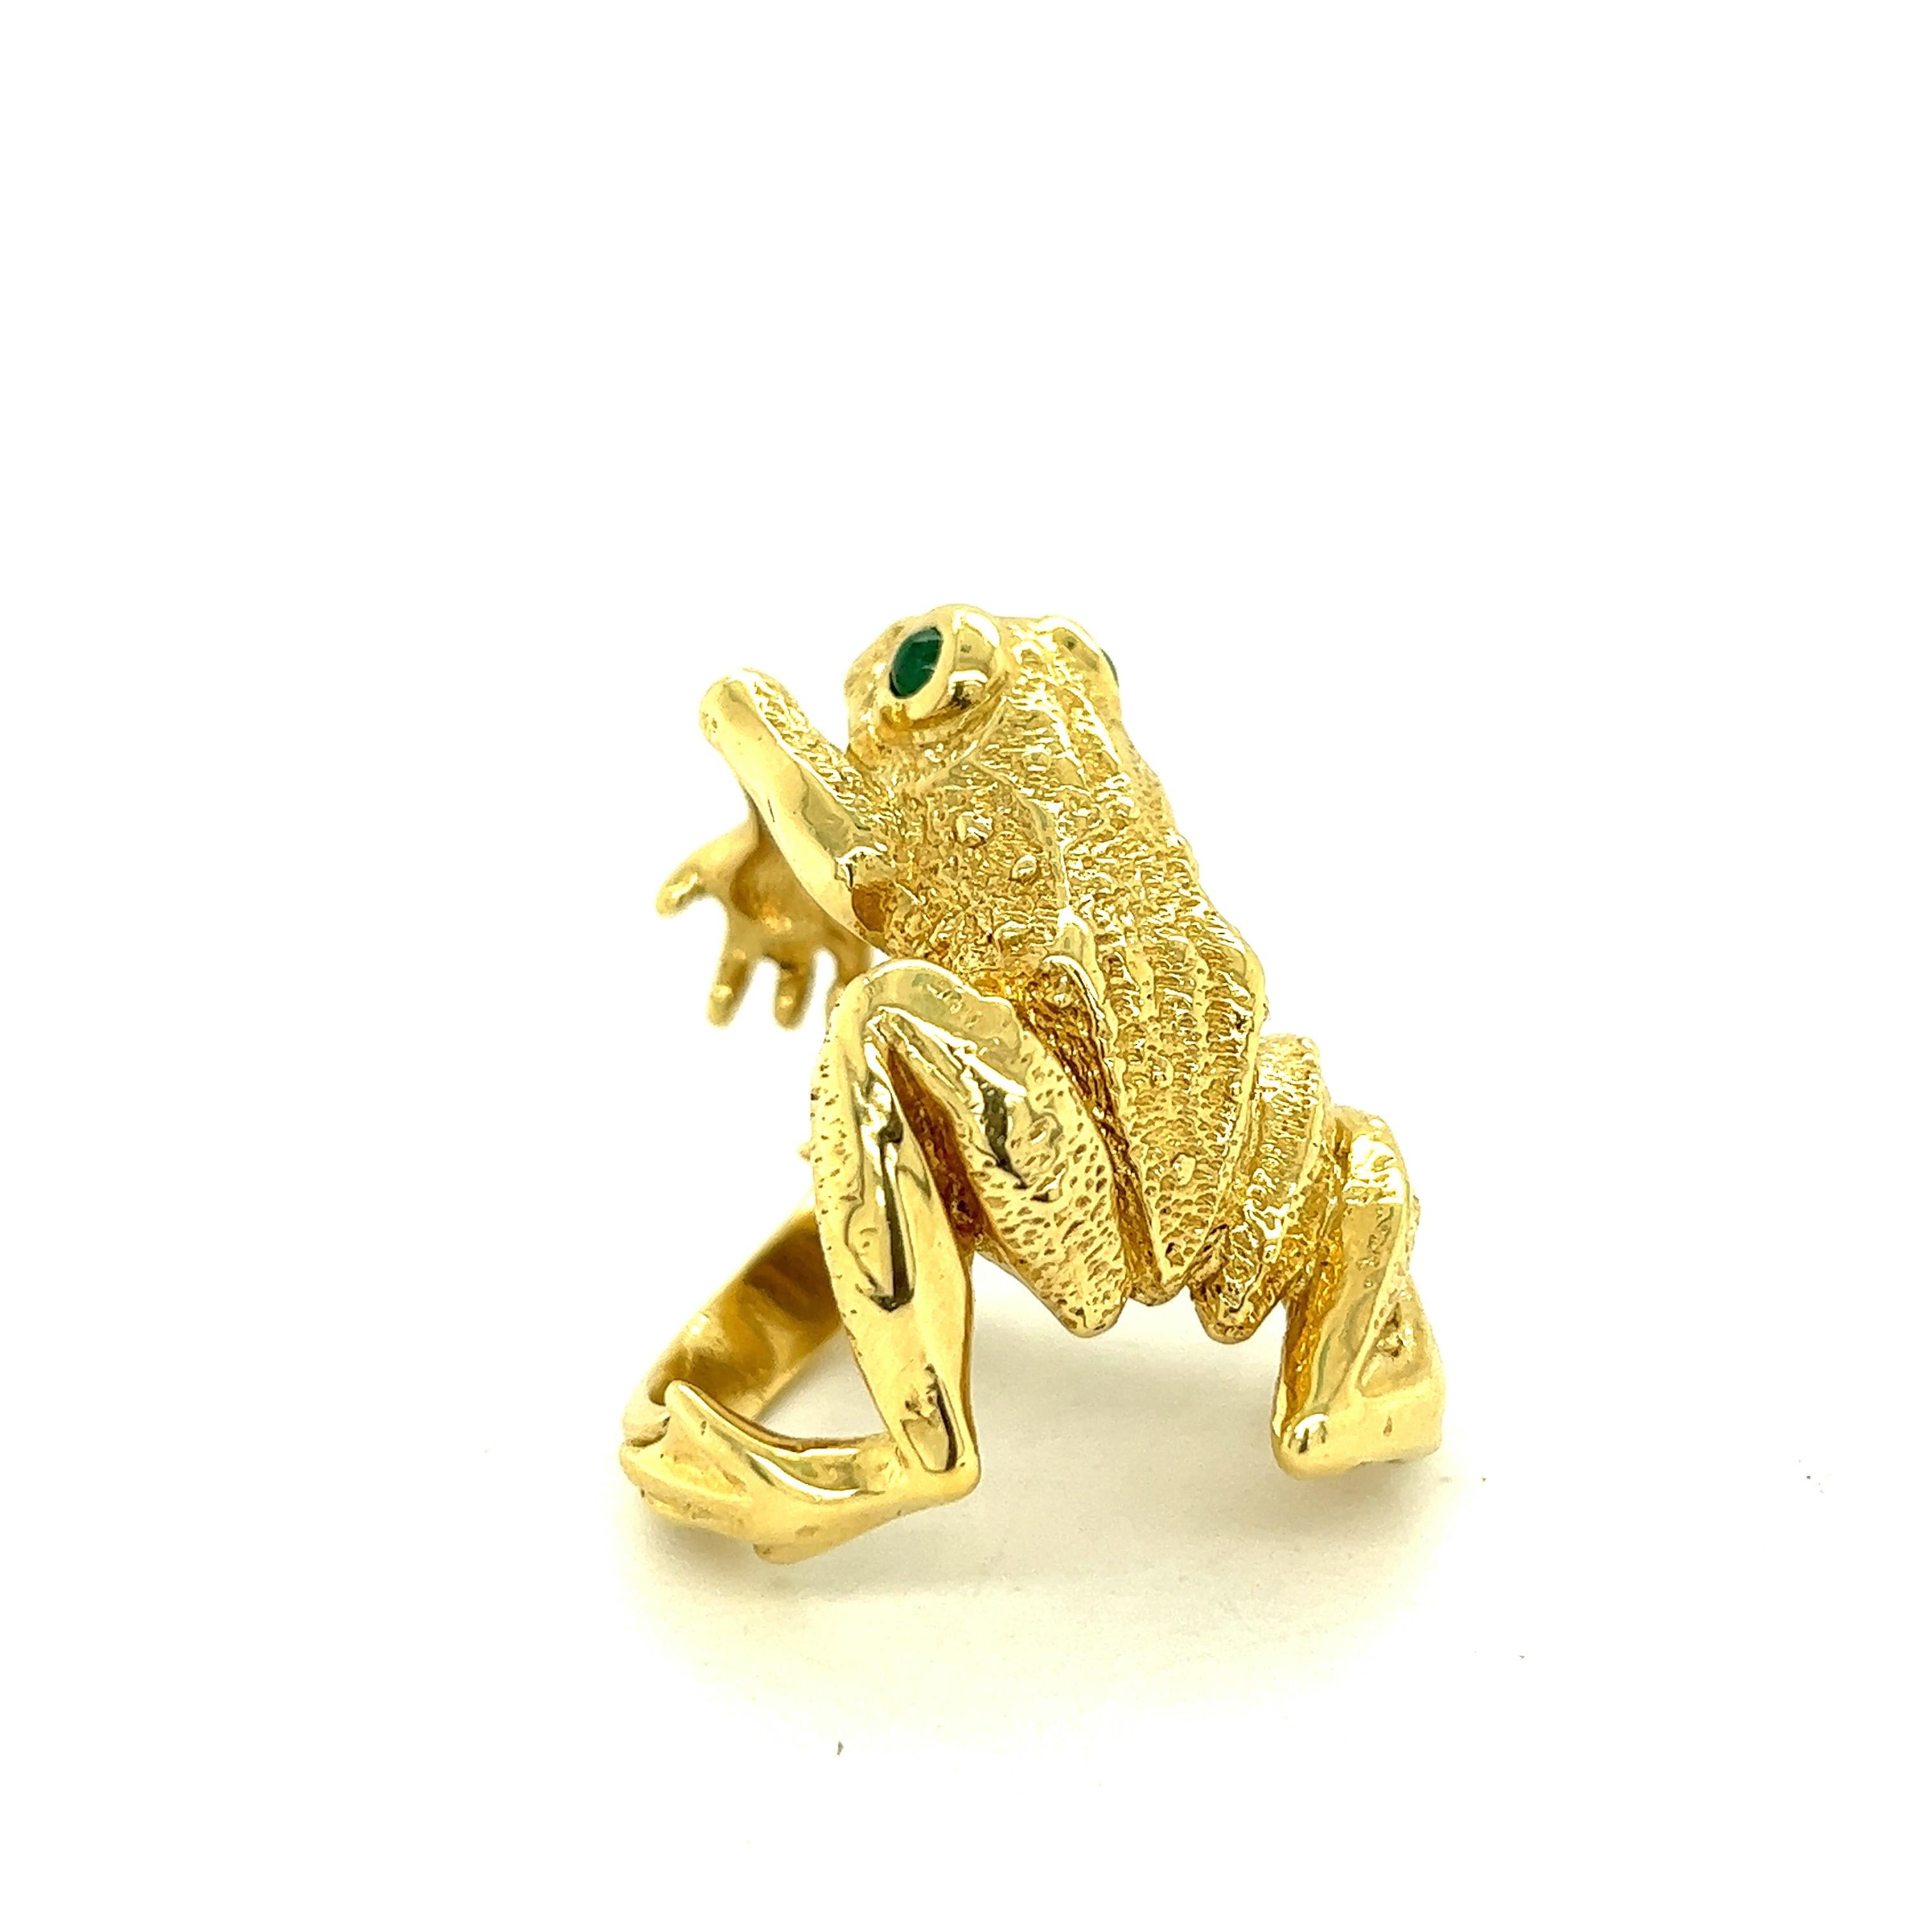 Kurt Wayne Vintage 18k Yellow Gold Large Frog Ring 1